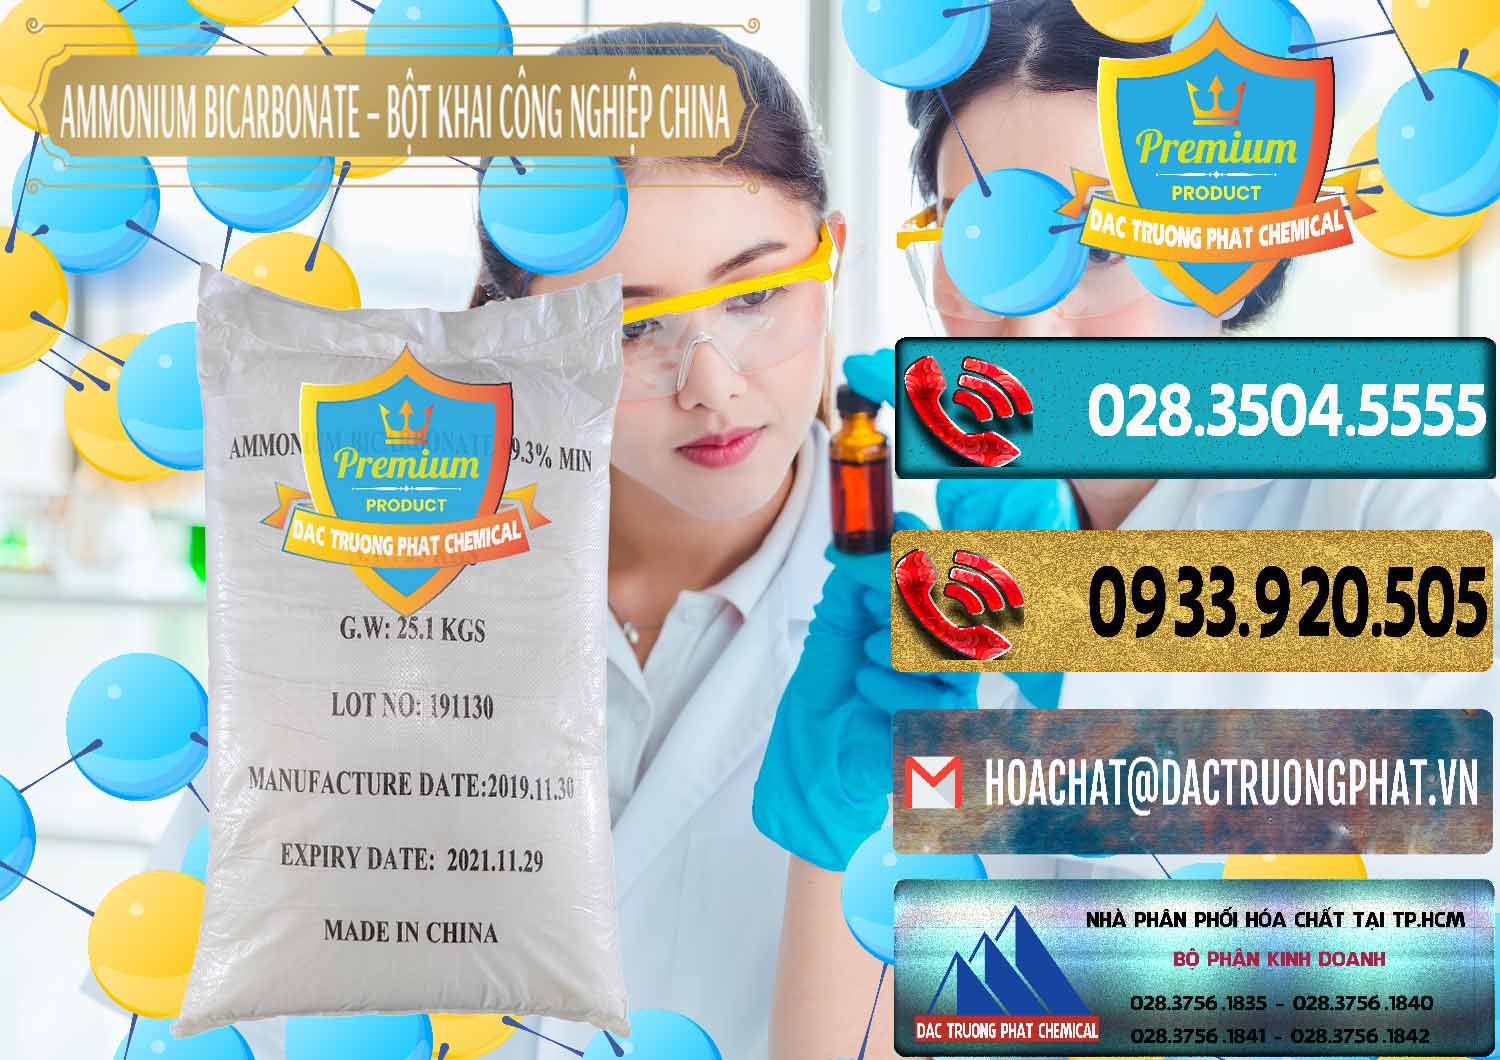 Cty kinh doanh & bán Ammonium Bicarbonate – Bột Khai Công Nghiệp Trung Quốc China - 0020 - Chuyên phân phối - cung ứng hóa chất tại TP.HCM - hoachatdetnhuom.com